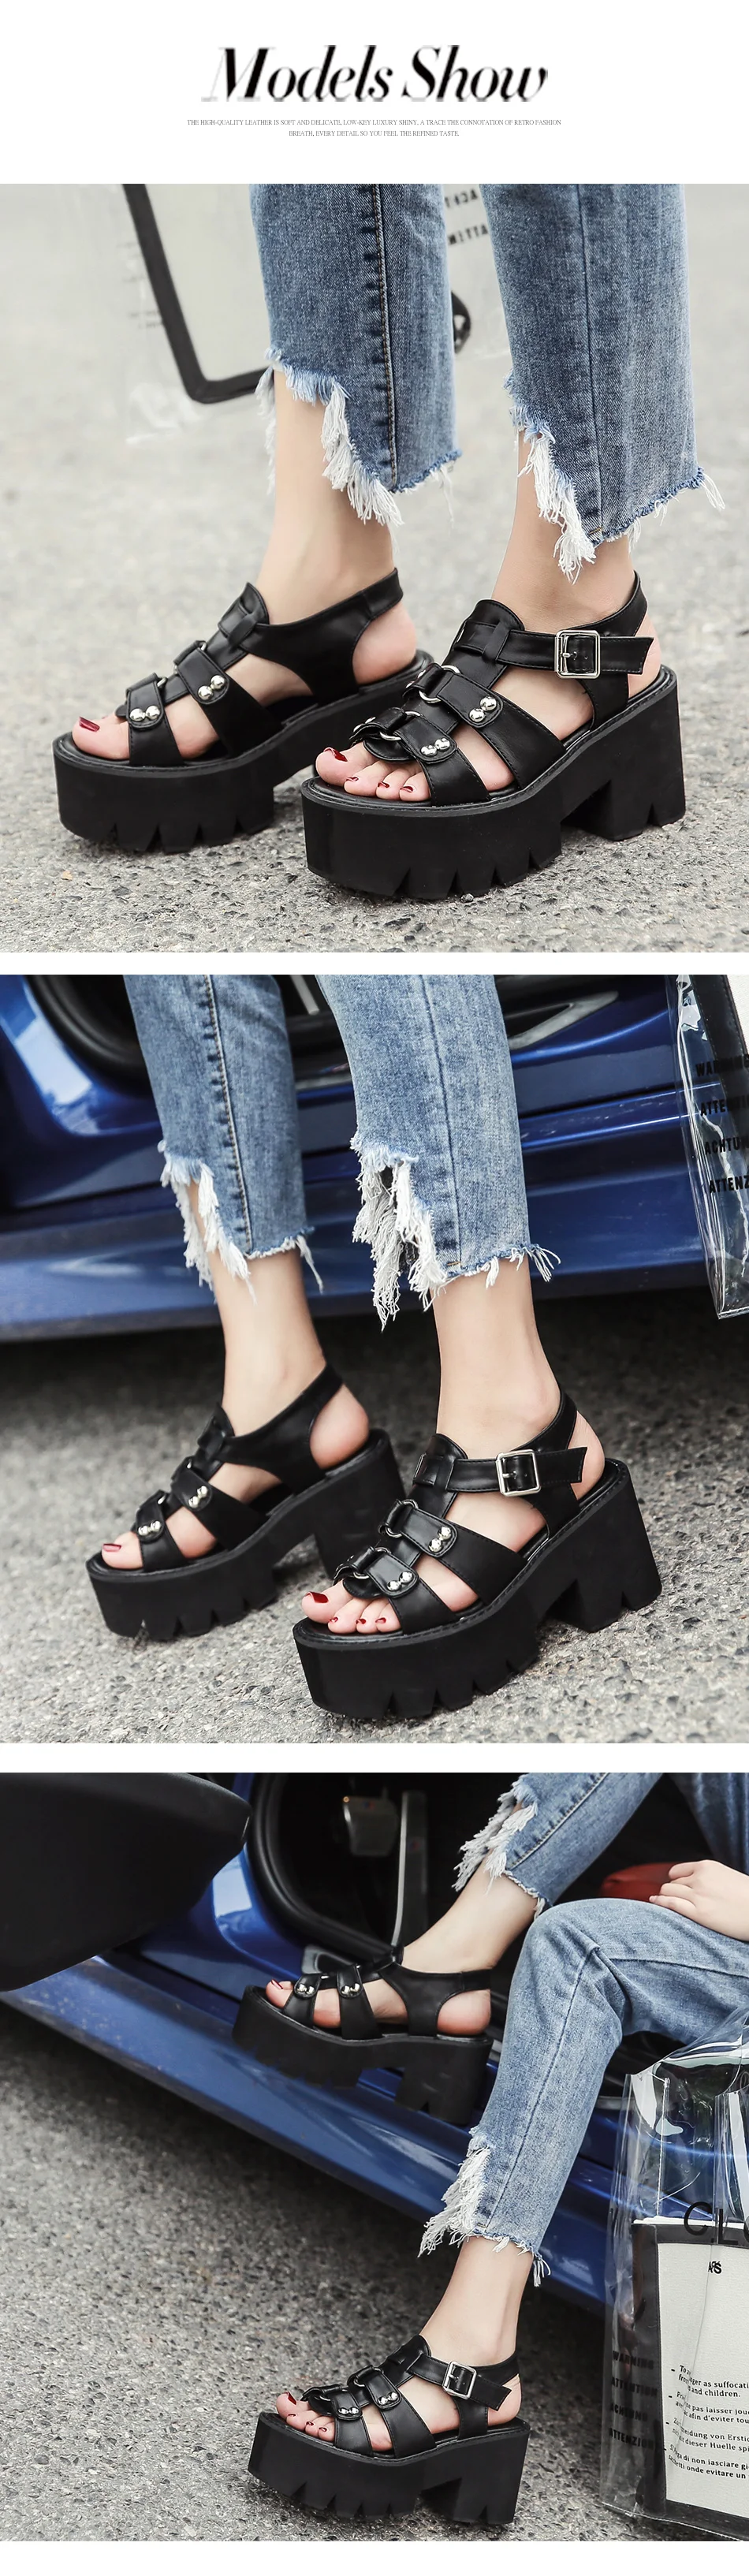 Gdgydh; не сужающийся книзу массивный каблук сандалии женские на платформе обувь в стиле «панк» Новая летняя обувь с открытым носком женские туфли на блочном каблуке с модными заклепками; скидка